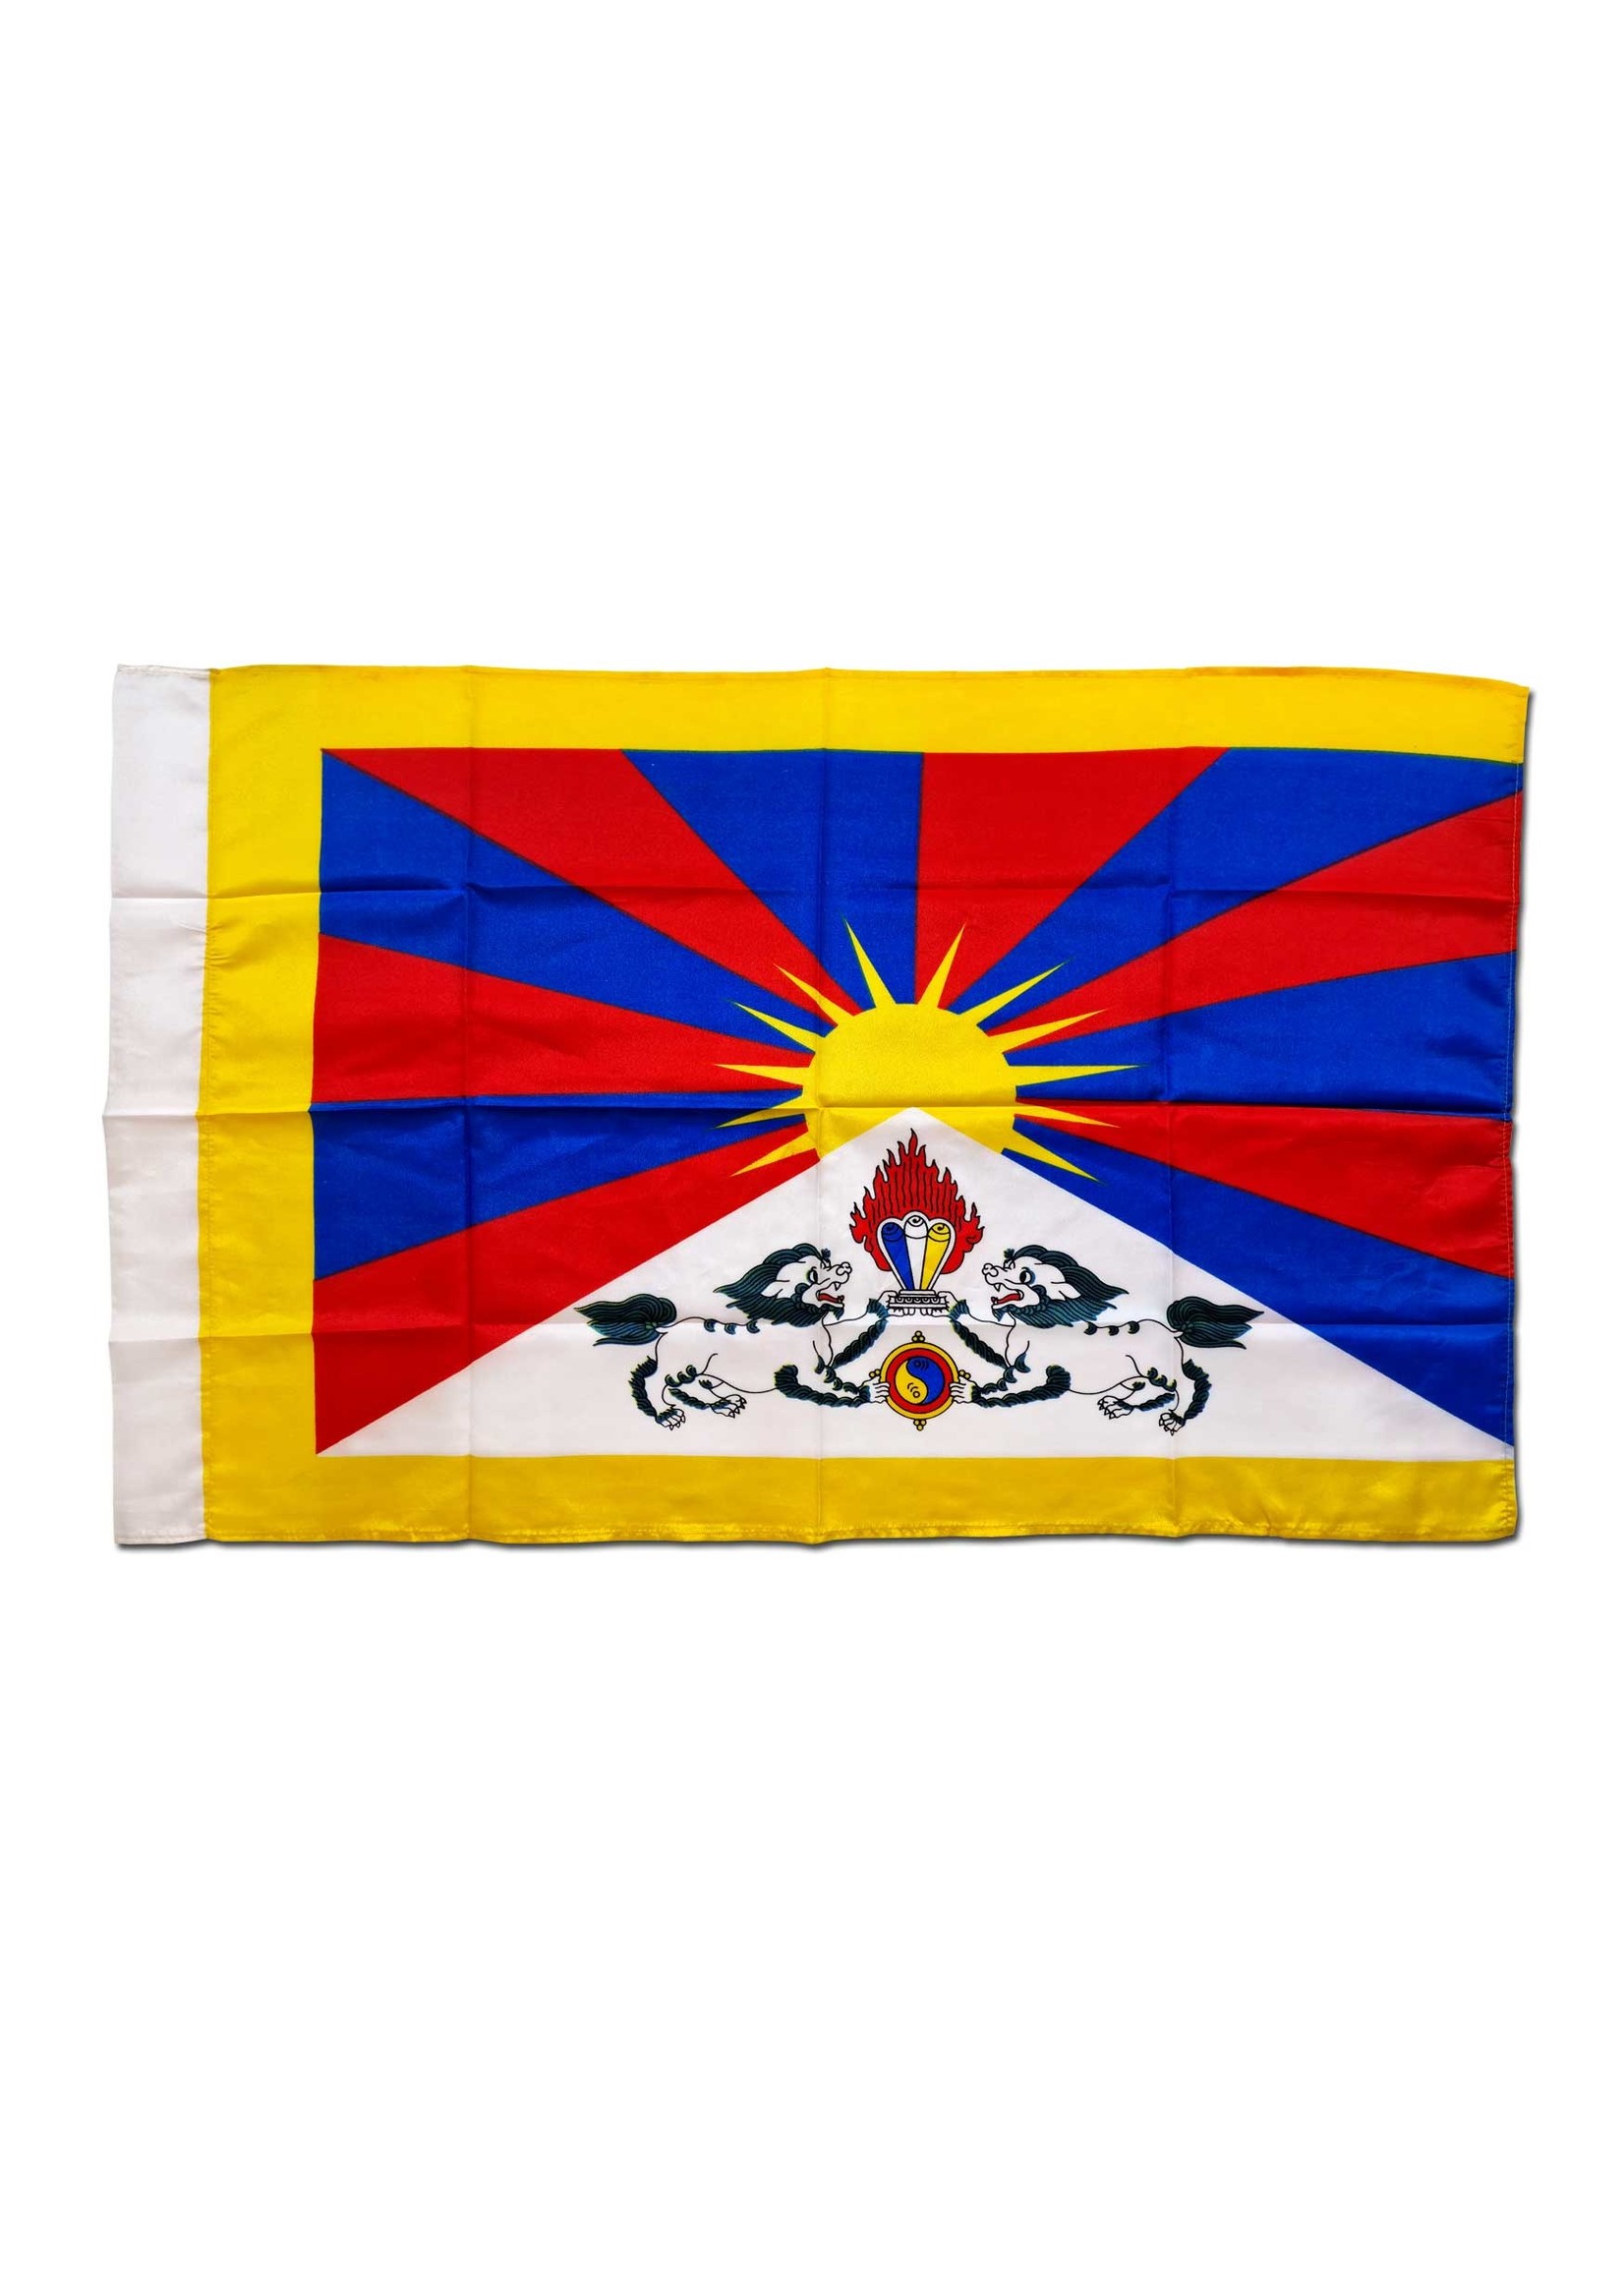 Tibetische Nationalflagge